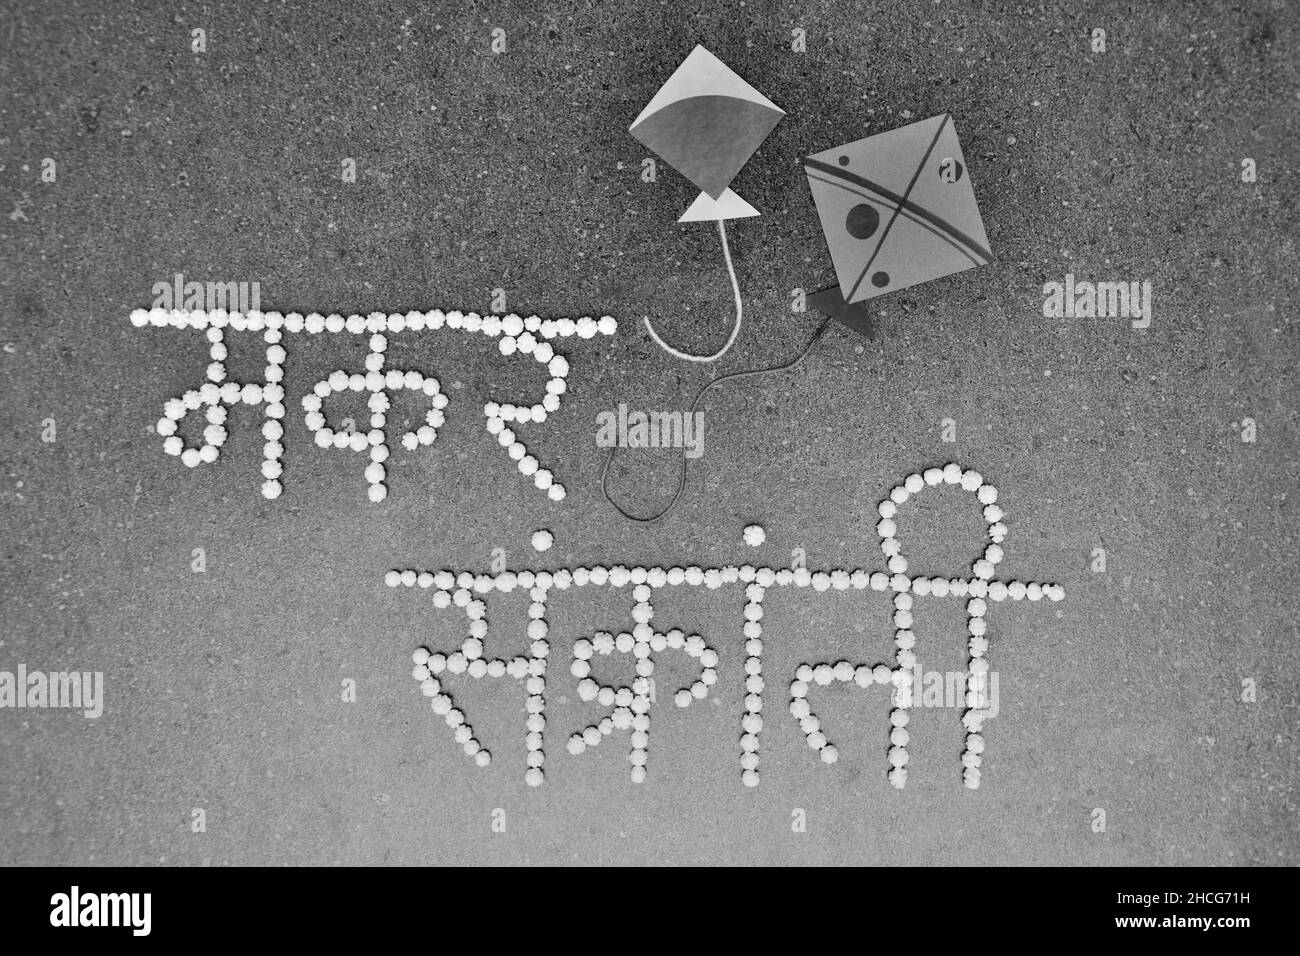 Makar Sankranti Typographie dans la police Devanagari utilisant le halwa de couleur blanche ou des boules de sucre Banque D'Images